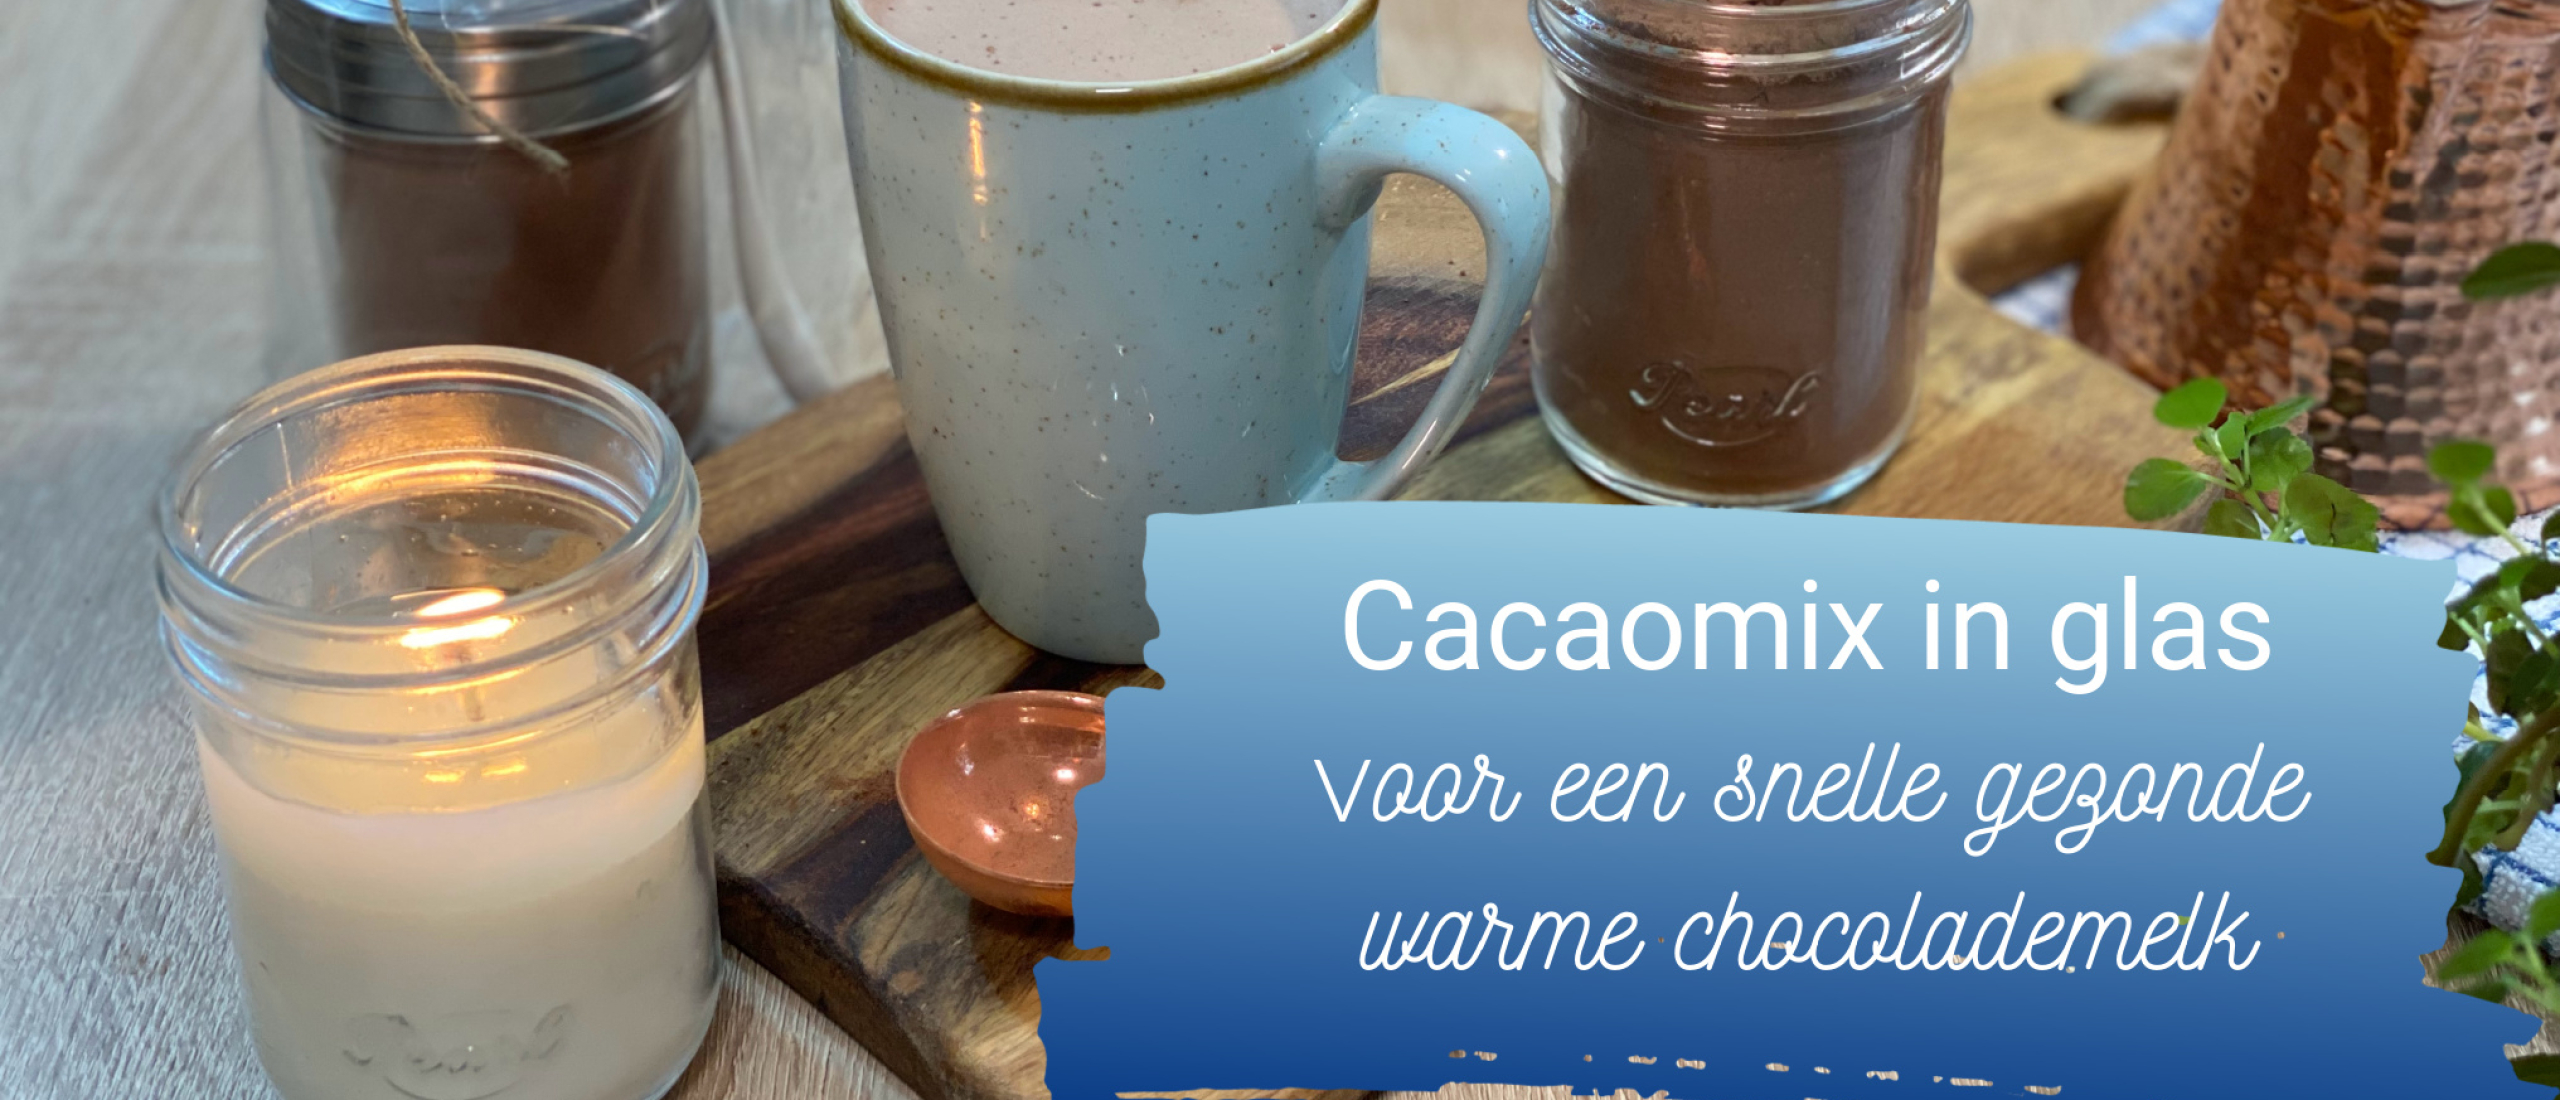 Cacao mix in glas, voor een snelle gezonde warme chocolademelk